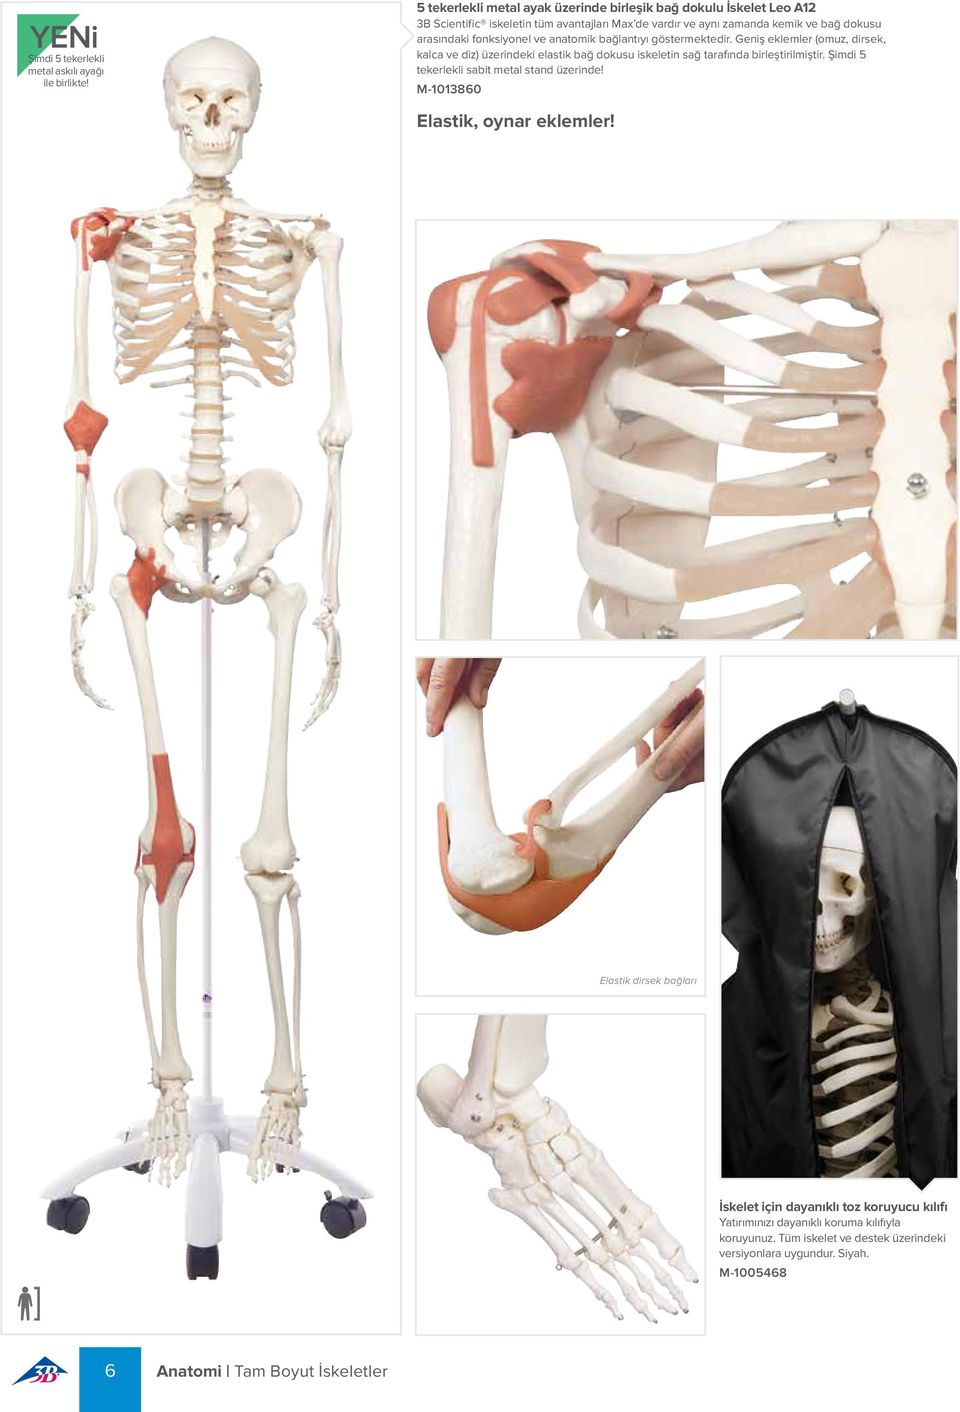 fonksiyonel ve anatomik bağlantıyı göstermektedir. Geniş eklemler (omuz, dirsek, kalca ve diz) üzerindeki elastik bağ dokusu iskeletin sağ tarafında birleştirilmiştir.